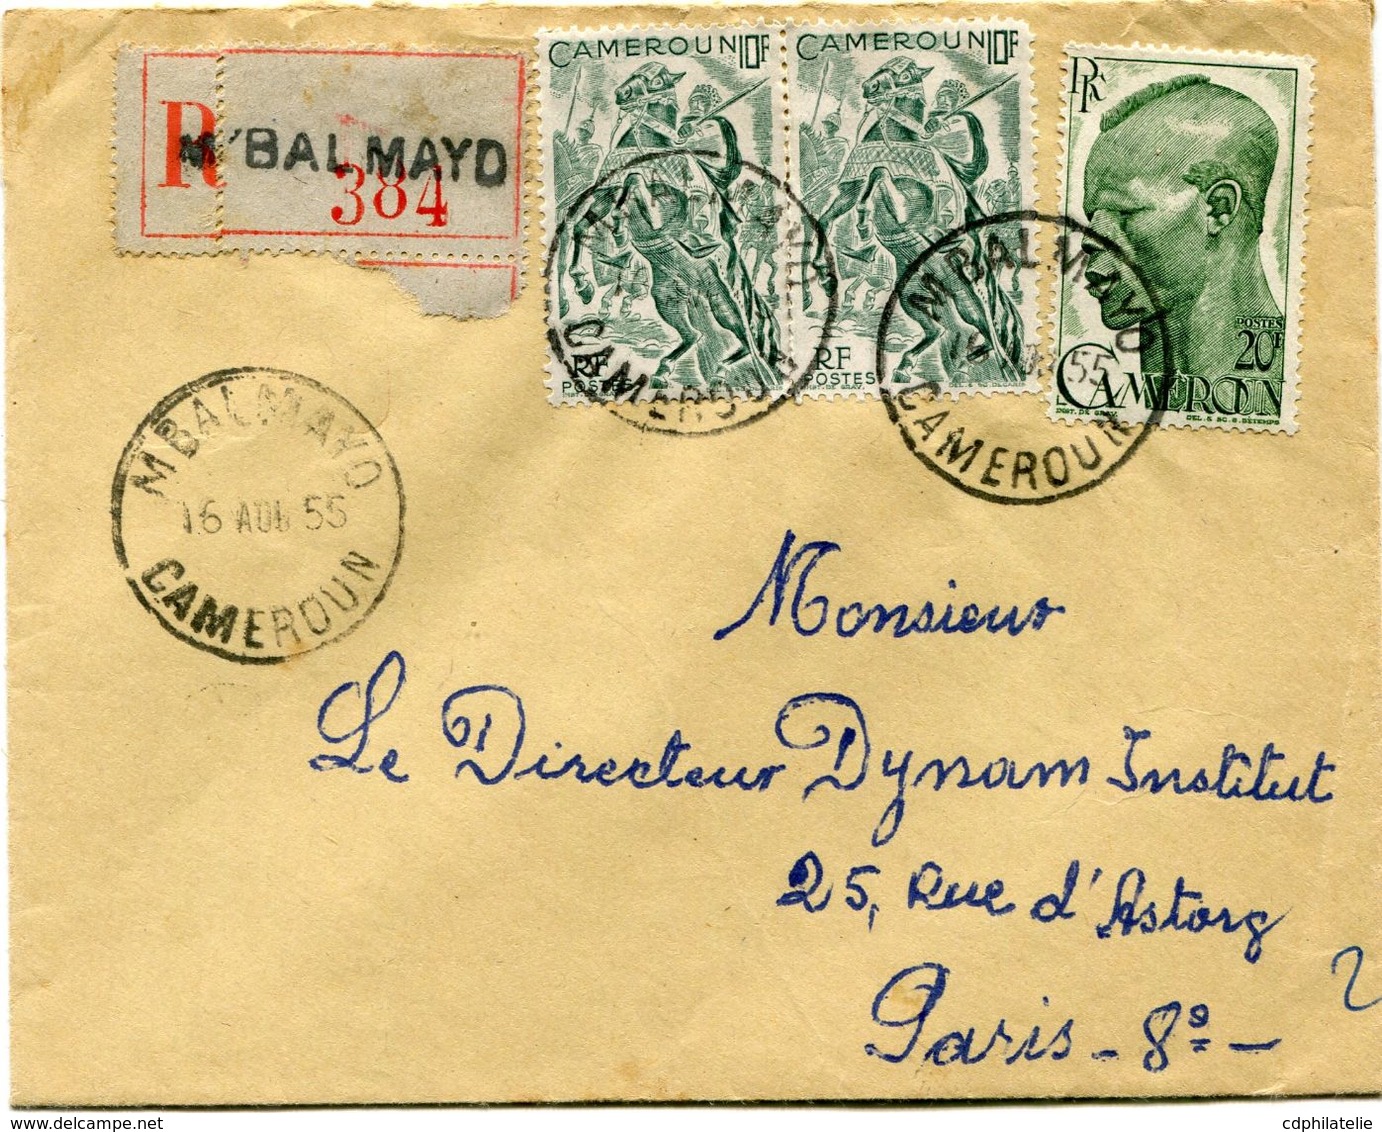 CAMEROUN LETTRE RECOMMANDEE DEPART M'BALMAYO 16 AOU 55 CAMEROUN POUR LA FRANCE - Lettres & Documents